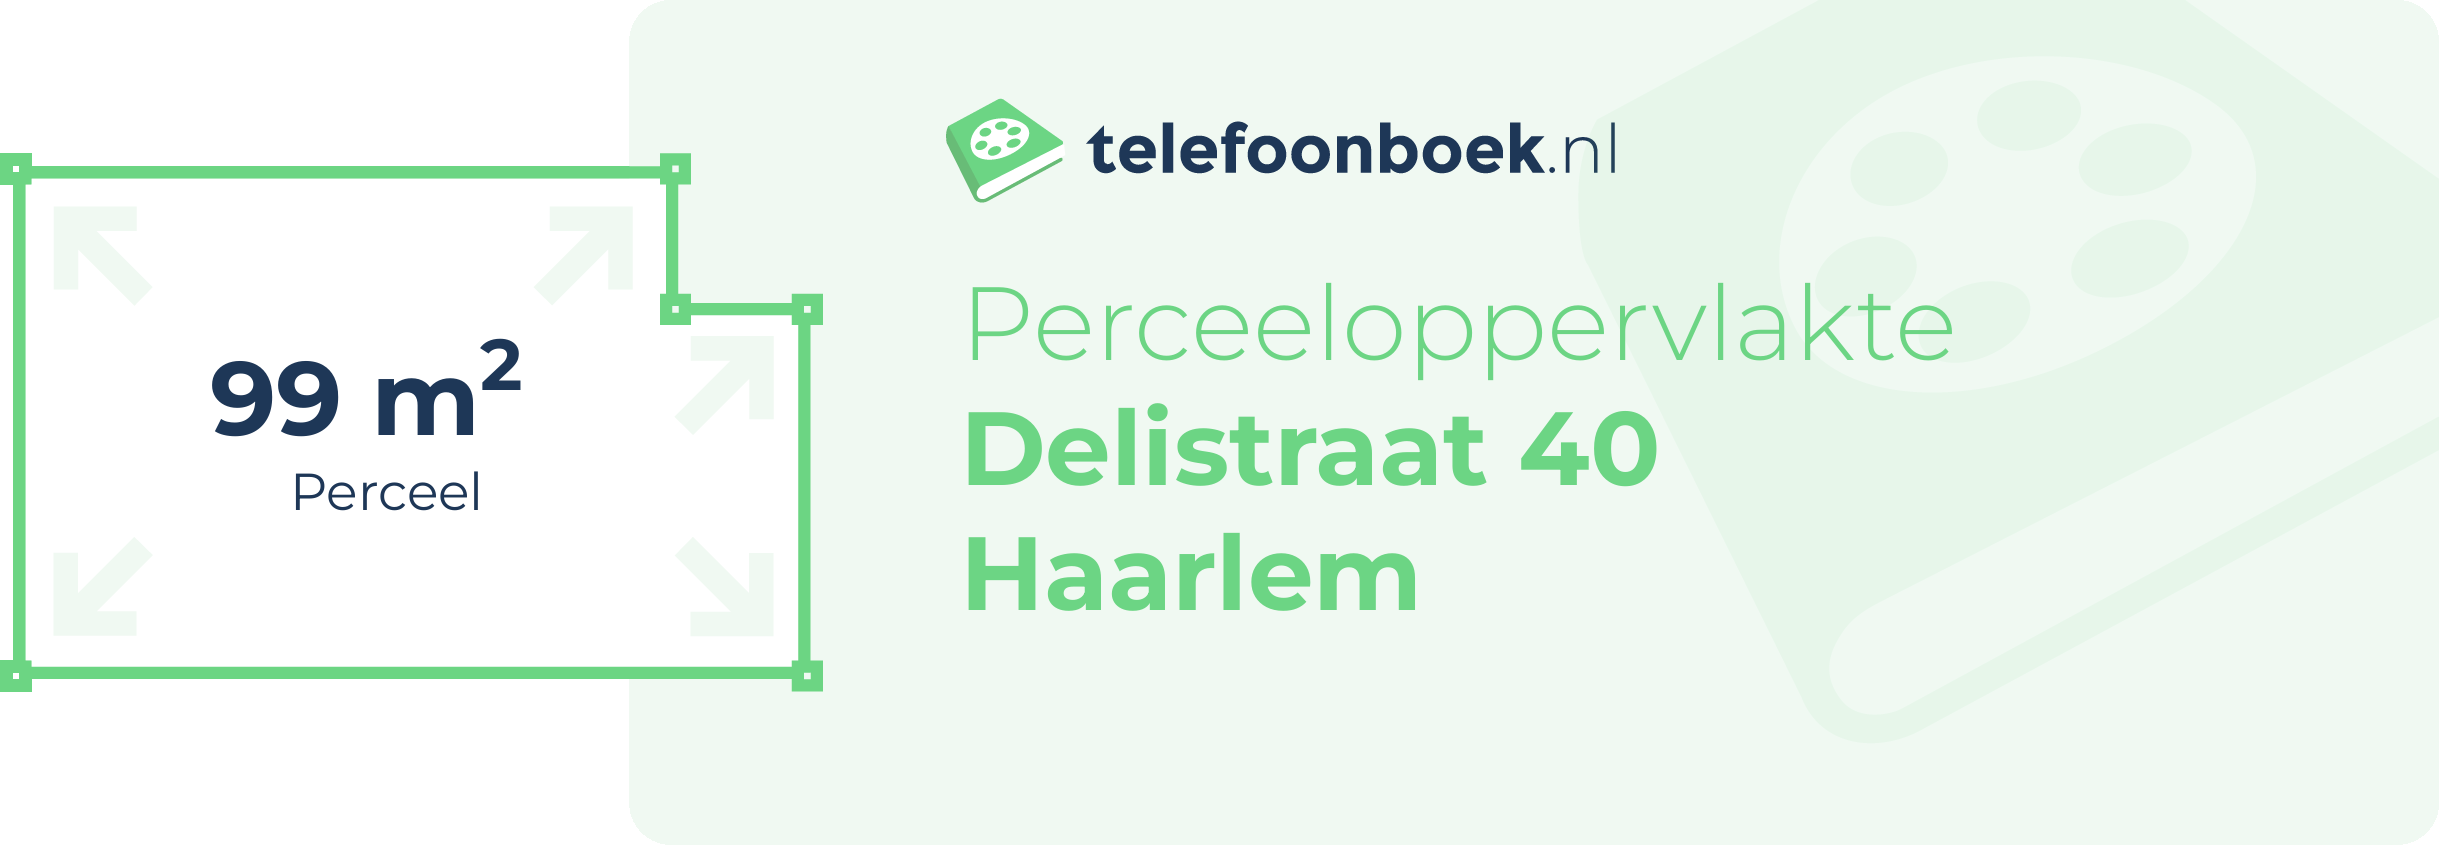 Perceeloppervlakte Delistraat 40 Haarlem